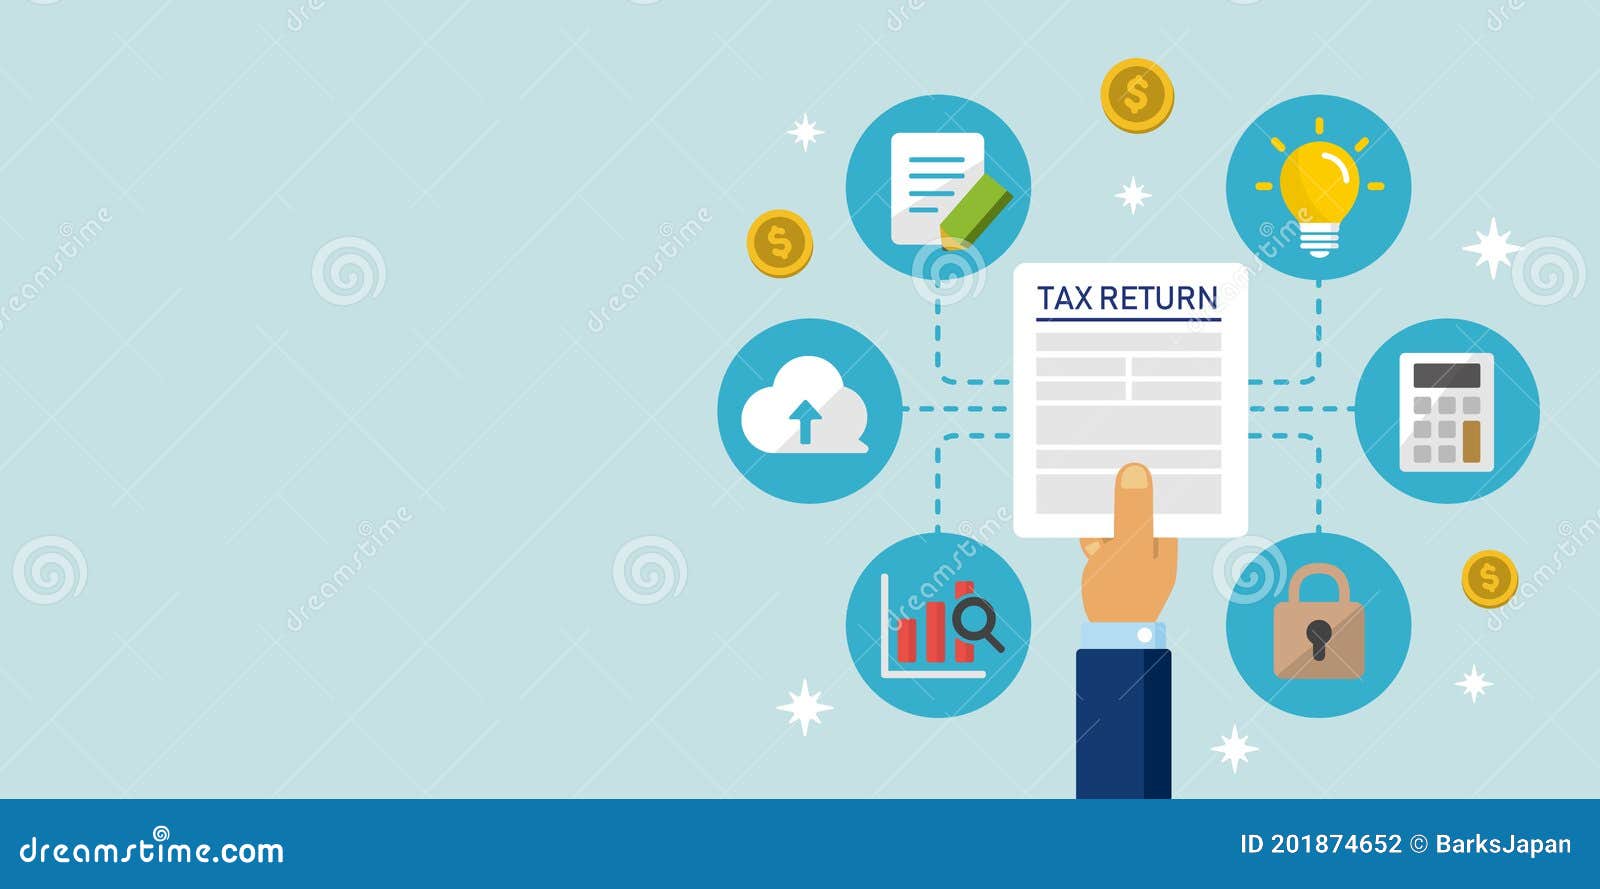 tax-return-submit-tax-document-tax-form-cartoon-banner-illustration